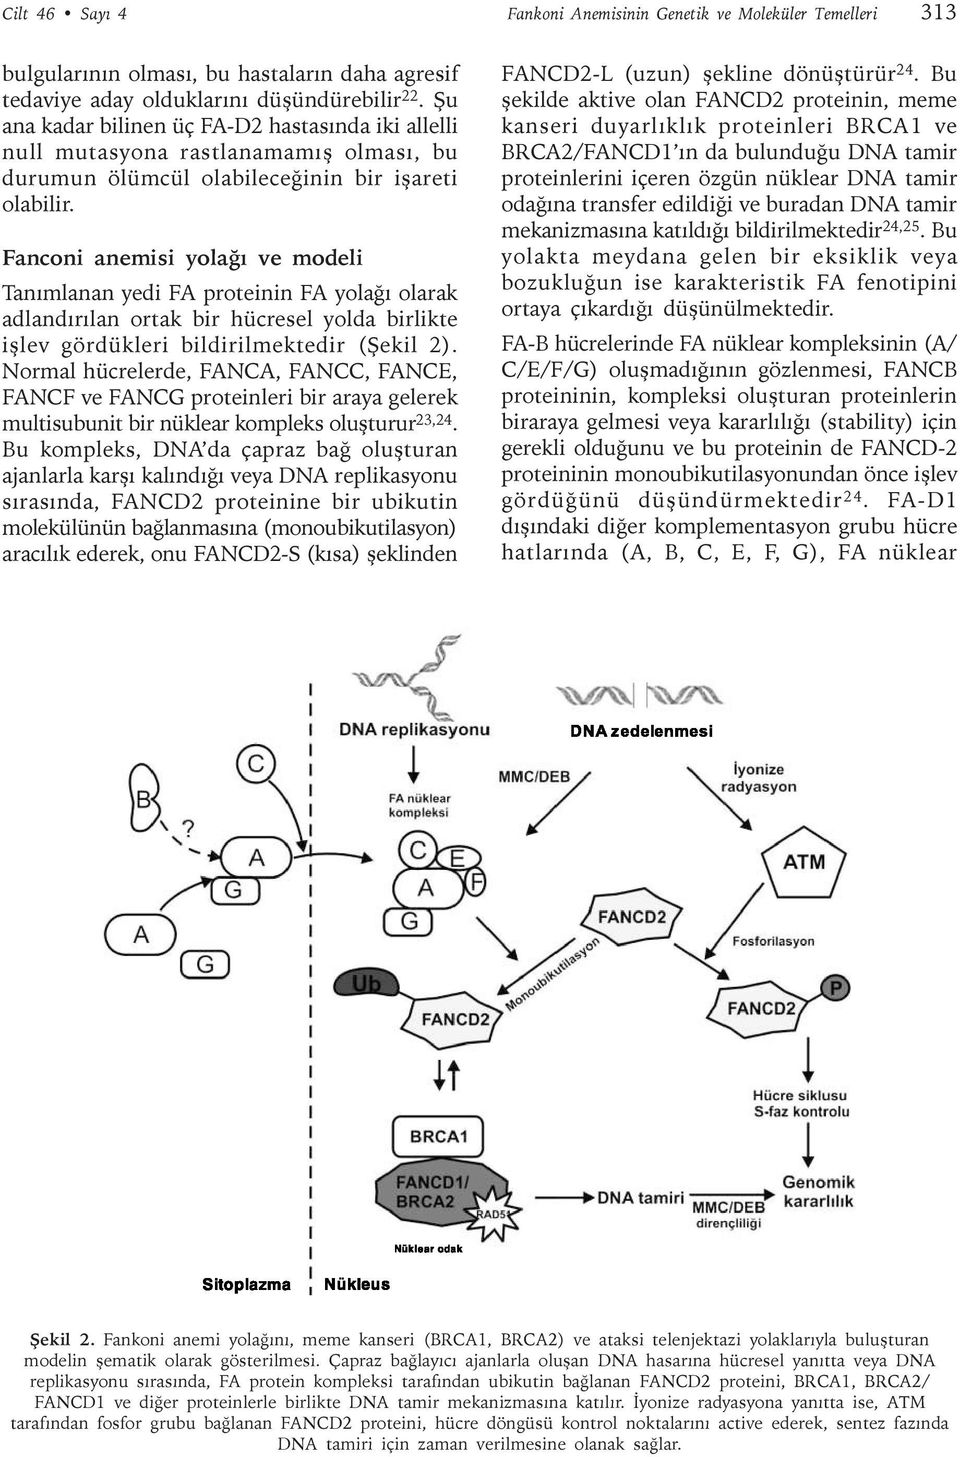 Fanconi anemisi yolaðý ve modeli Tanýmlanan yedi FA proteinin FA yolaðý olarak adlandýrýlan ortak bir hücresel yolda birlikte iþlev gördükleri bildirilmektedir (Þekil 2).